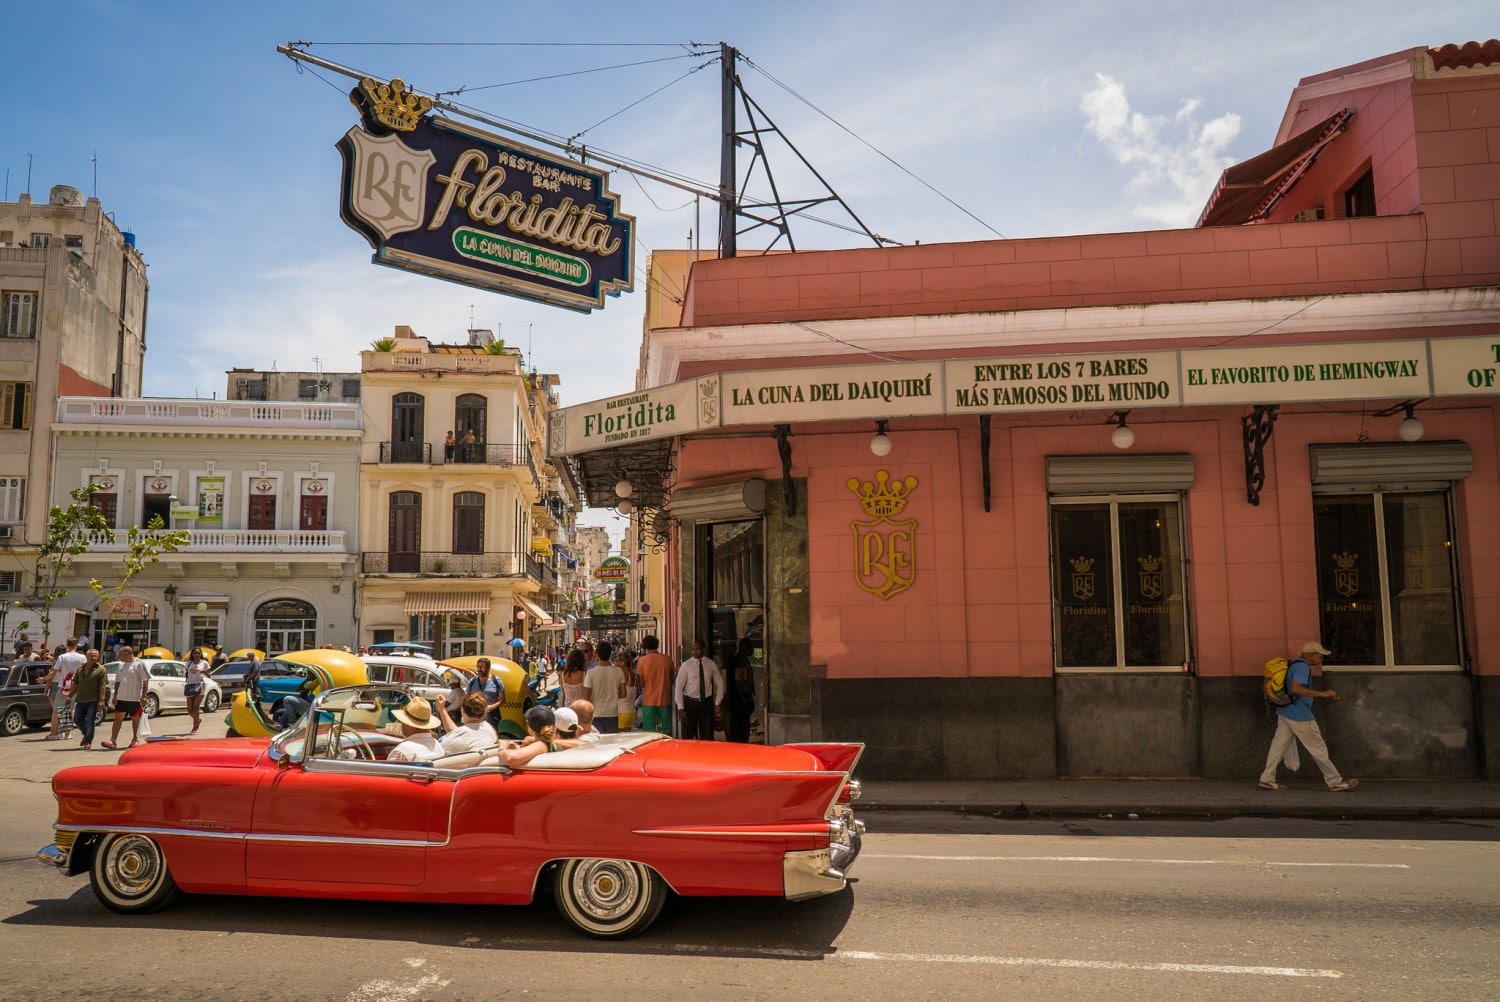 El Floridita Havana: The City's Most Famous Bar